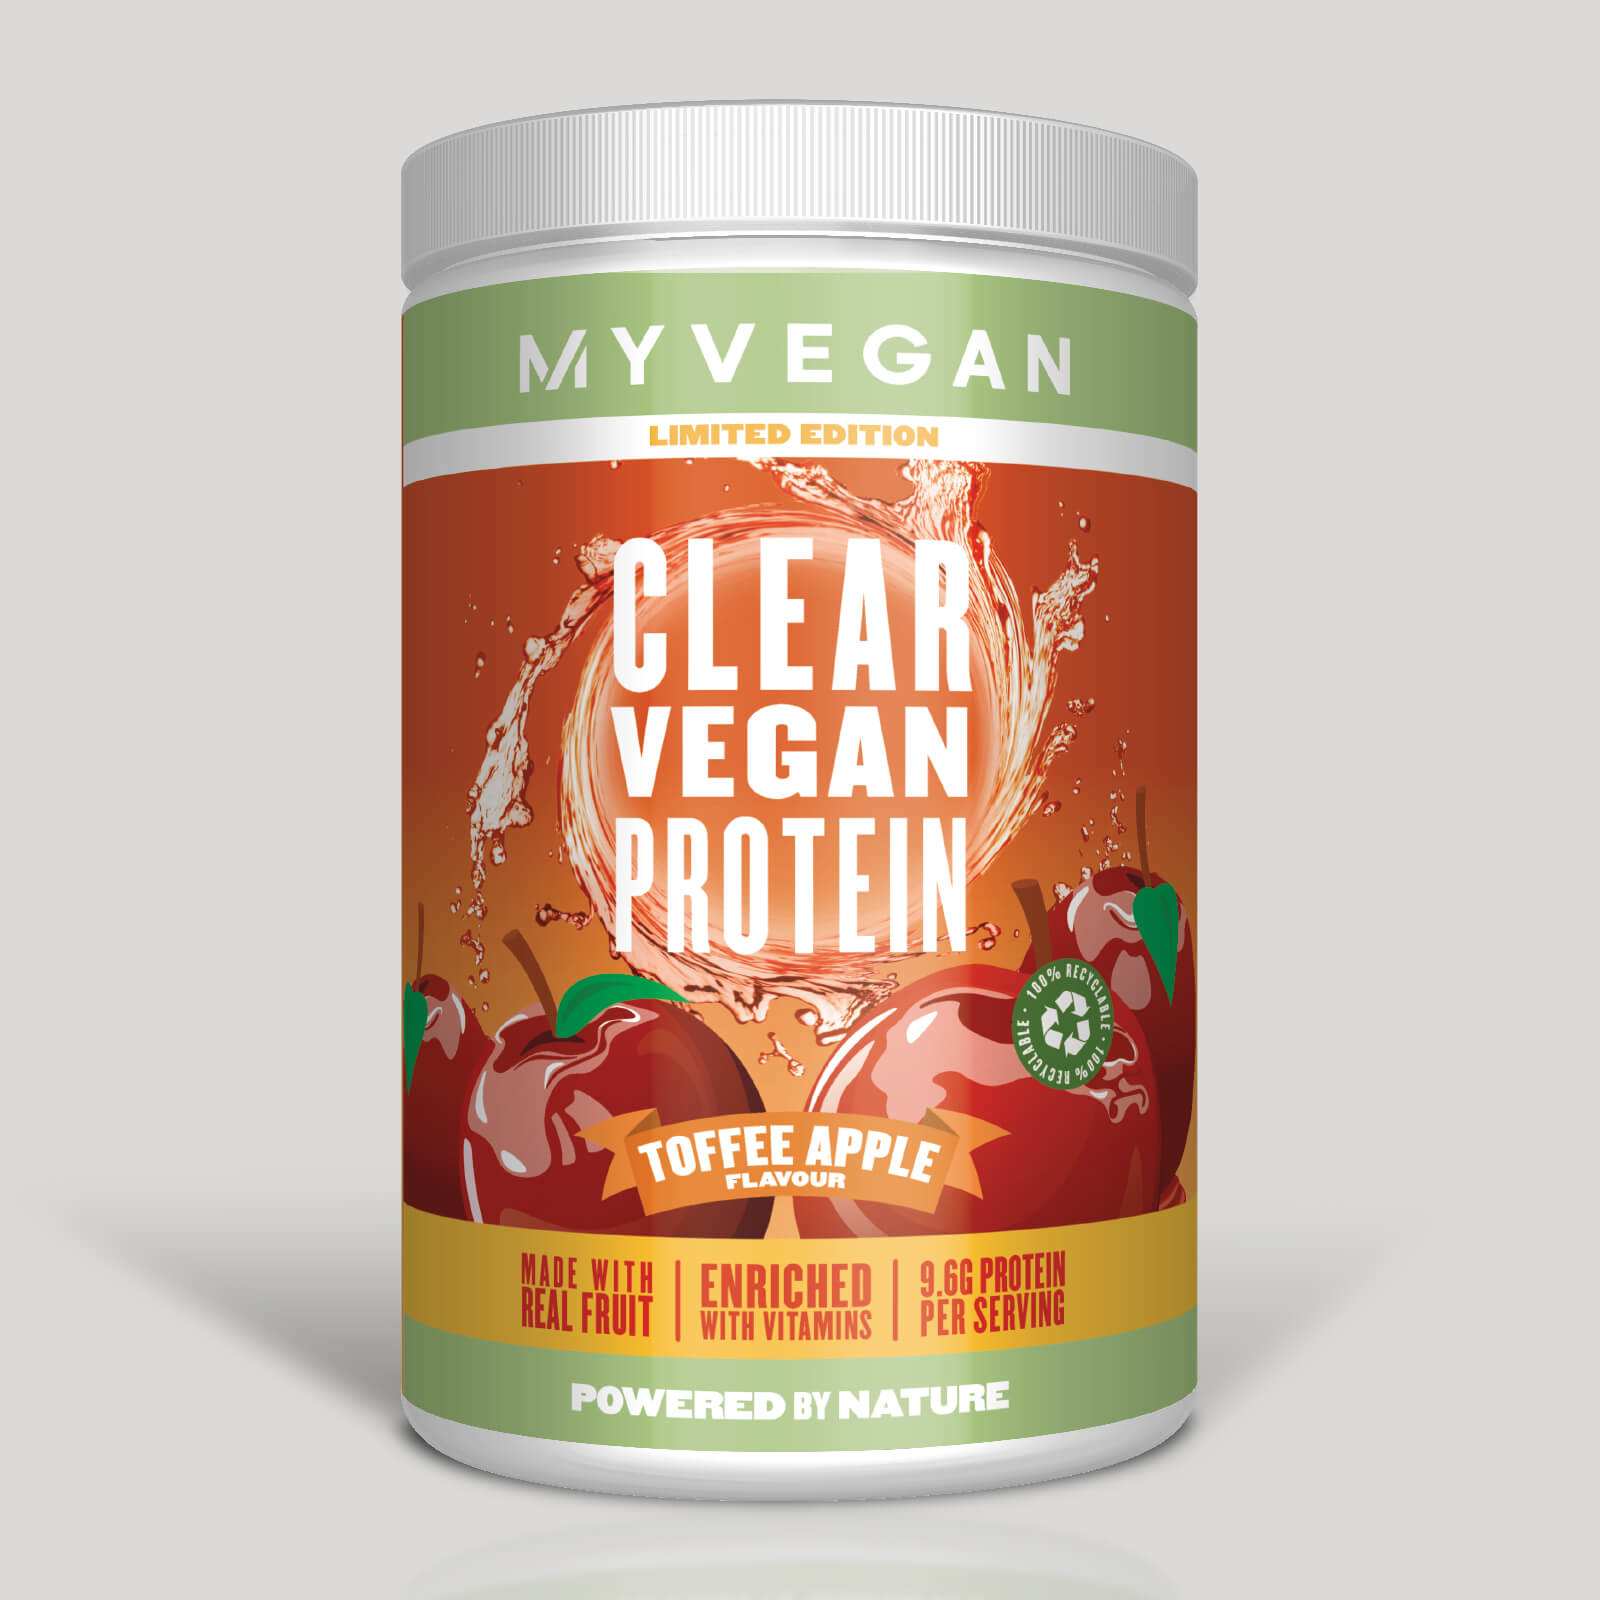 Myvegan Clear Vegan Protein, IMPACT WEEK 2 (WE) (ALT)